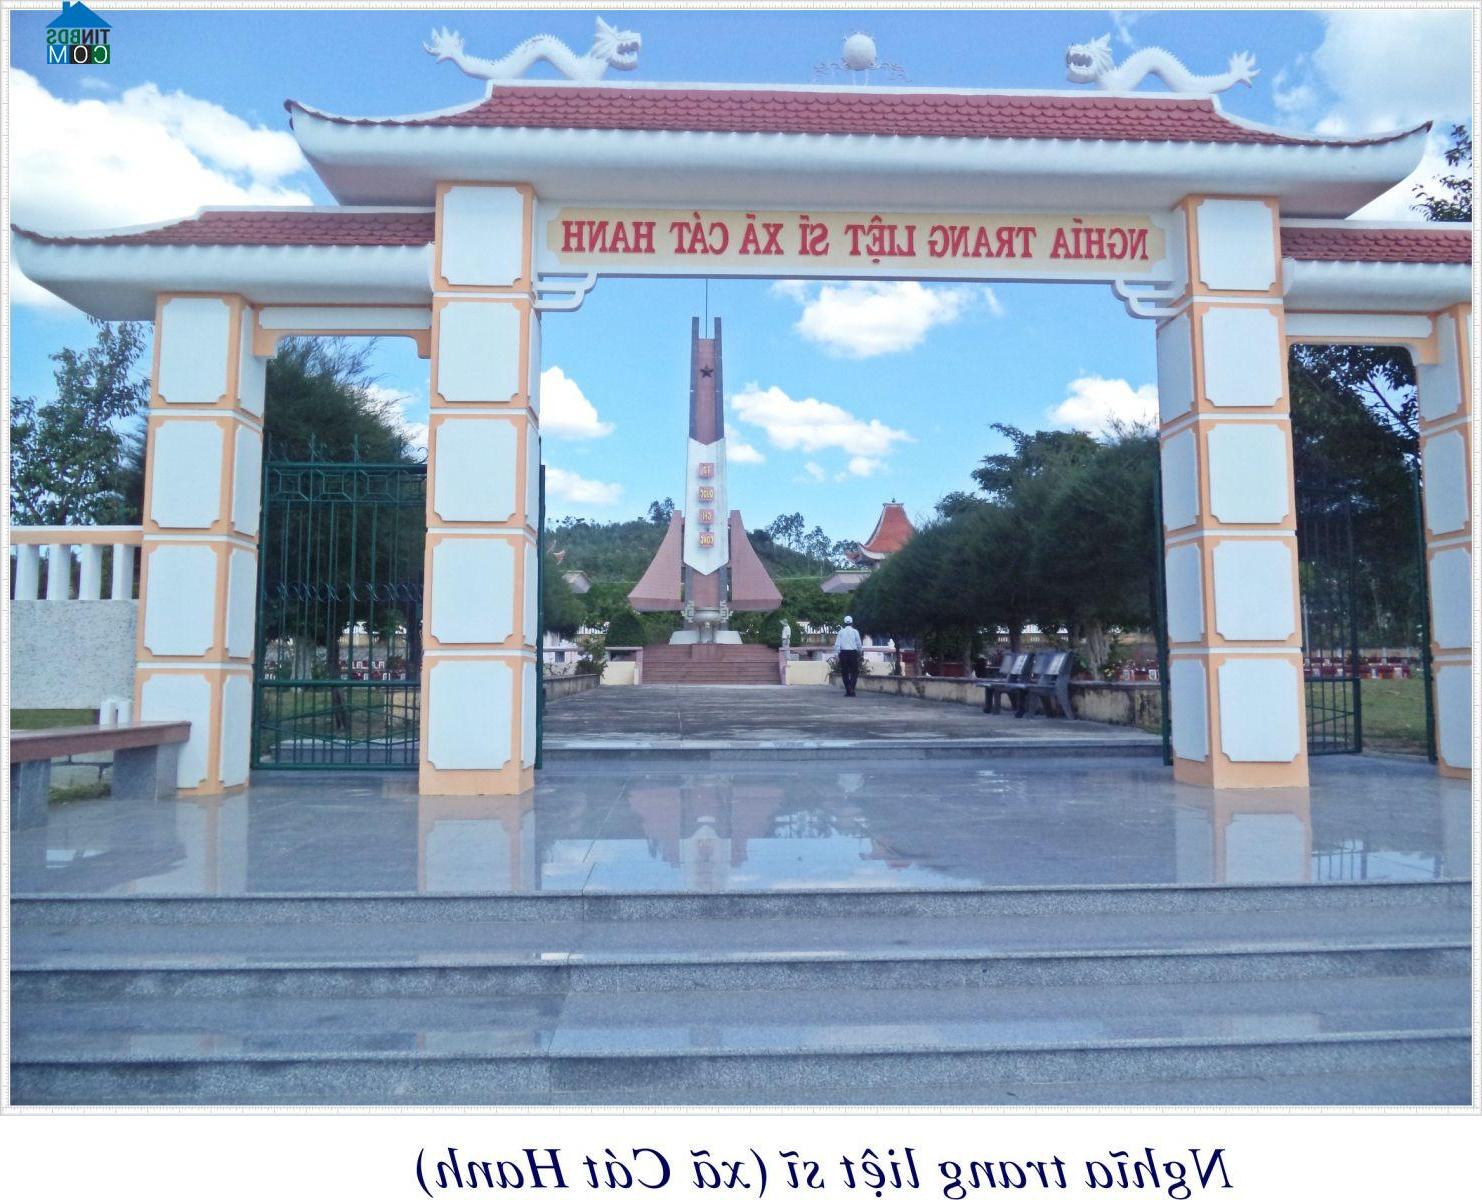 Hình ảnh Cát Hanh, Phù Cát, Bình Định